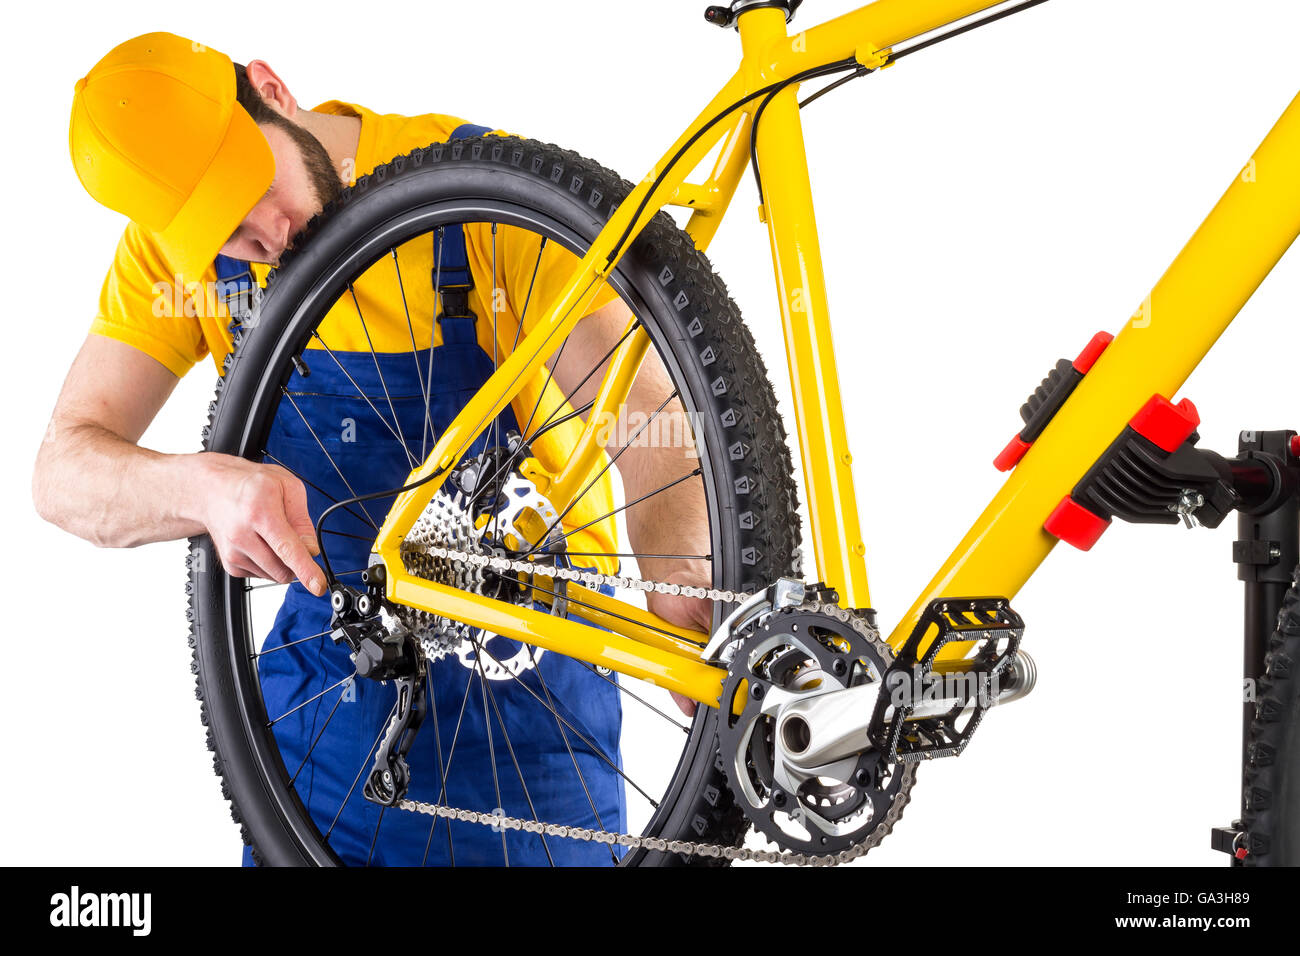 bicycle mechanic working on yellow mountain bike Stock Photo